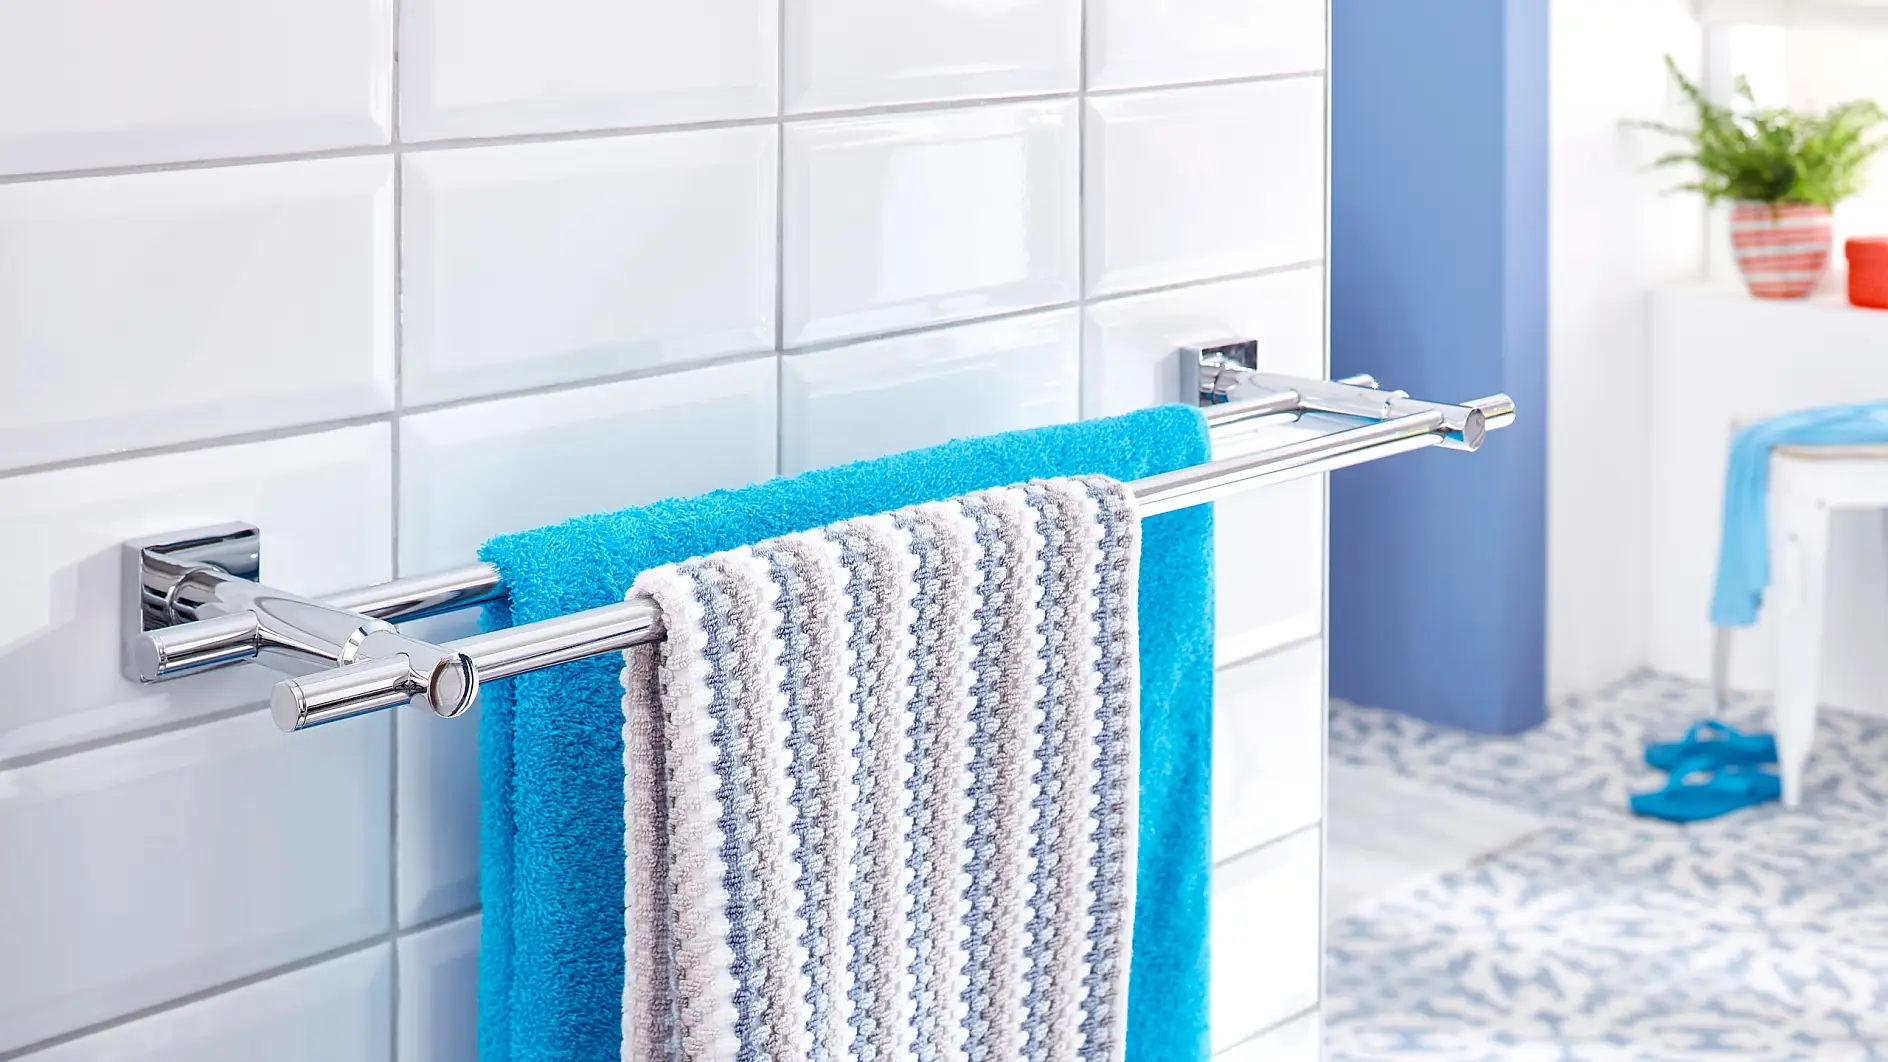 La solution idéale pour ranger vos serviettes et les laisser sécher. Votre salle de bains ne serait pas complète sans un porte serviettes.